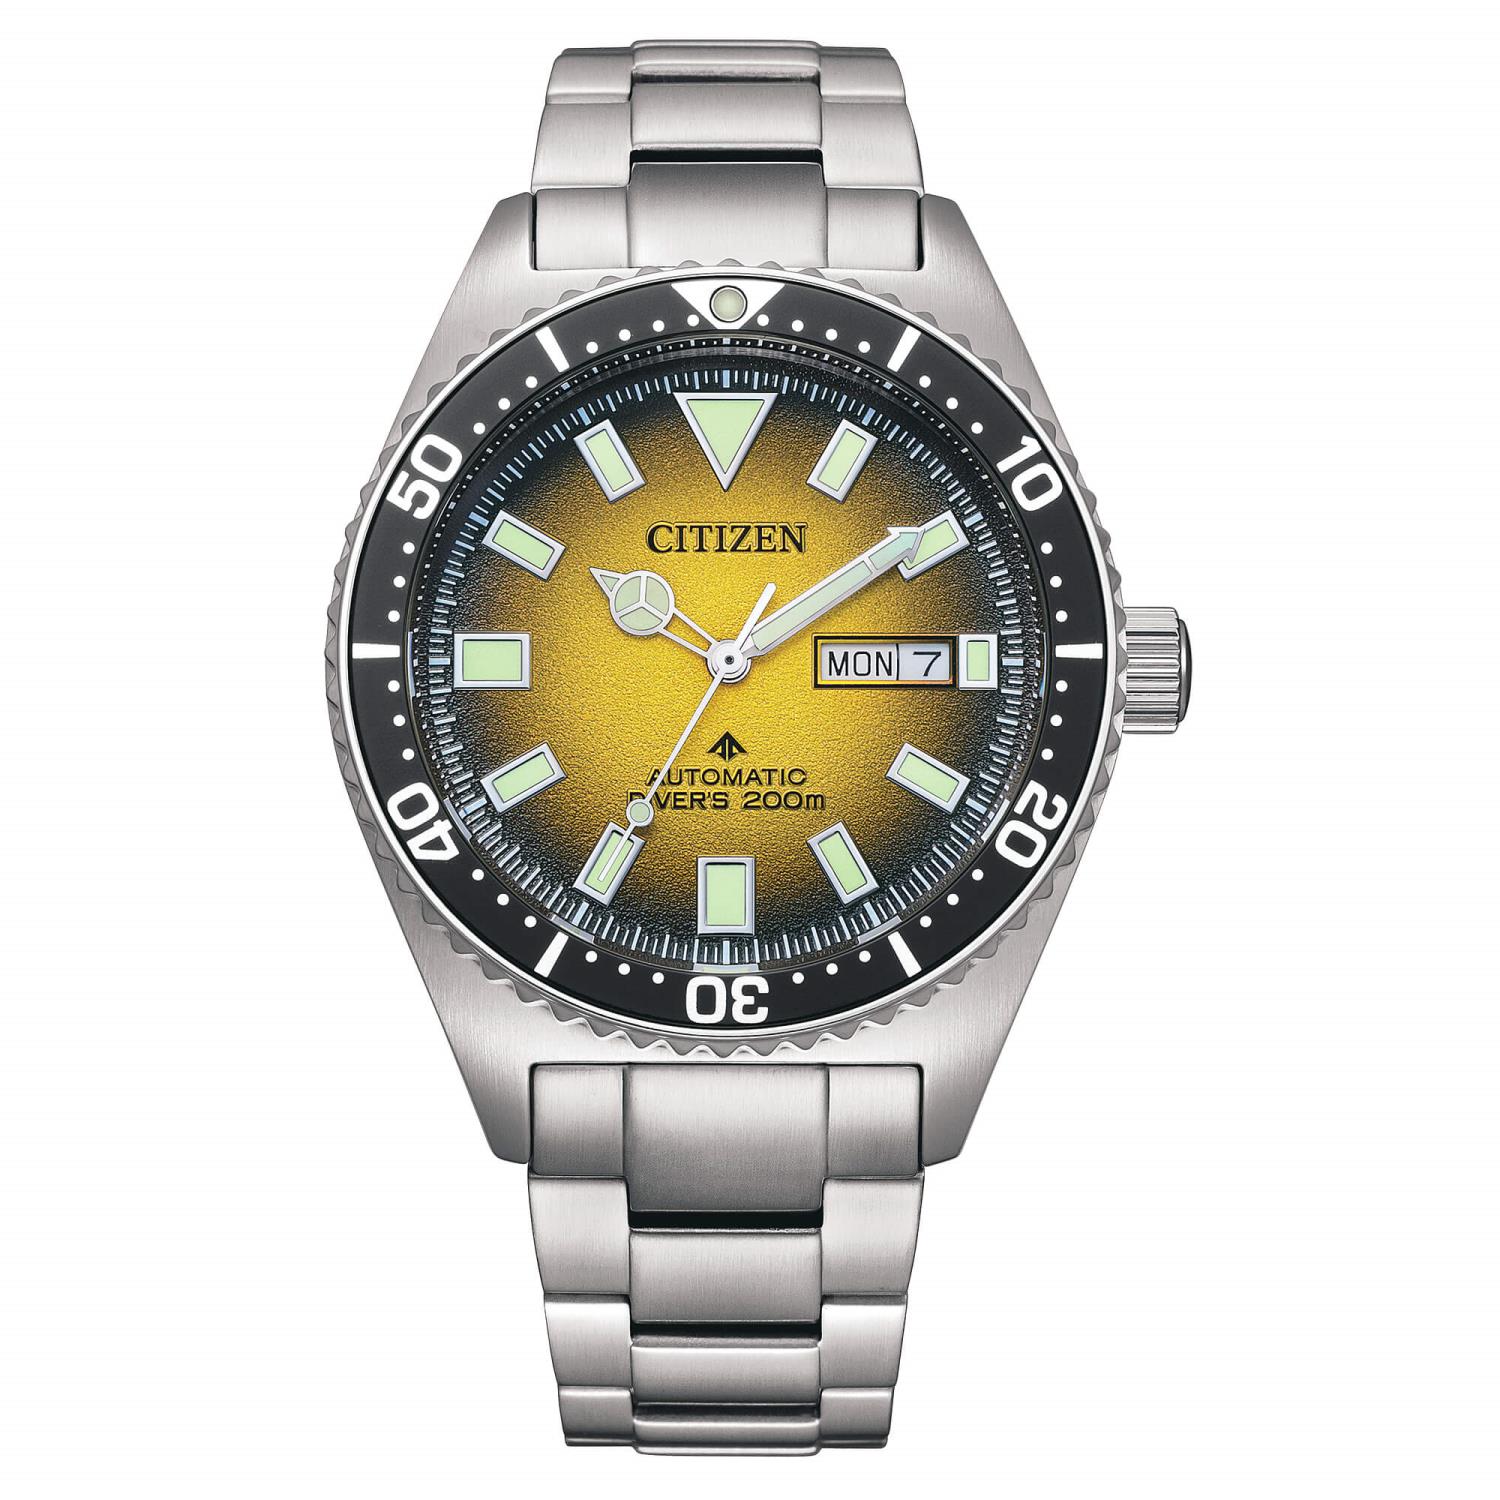 Orologio Citizen Promaster Diver's Automatic 200 mt. Ref. NY0120-52X - CITIZEN